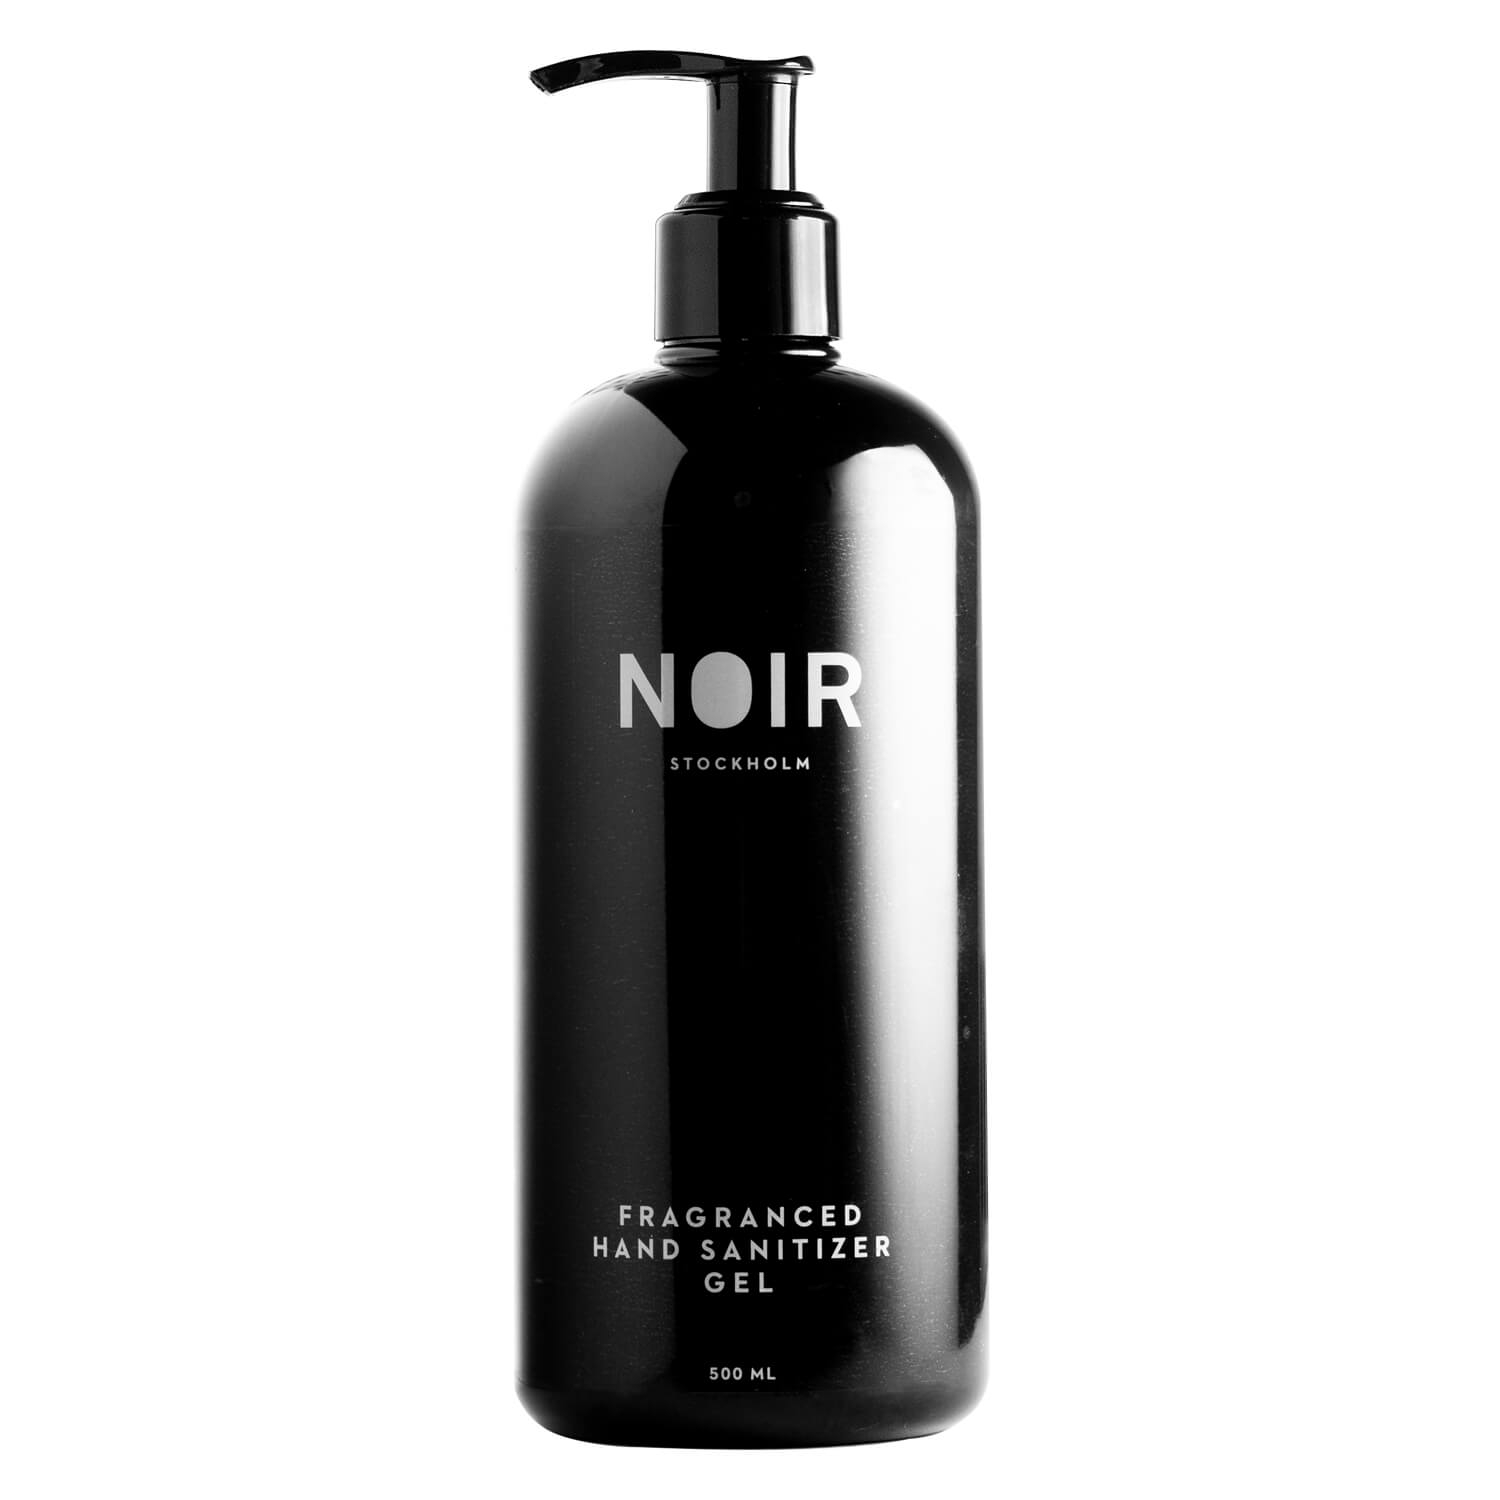 Produktbild von NOIR - Fragranced Hand Sanitizer Gel